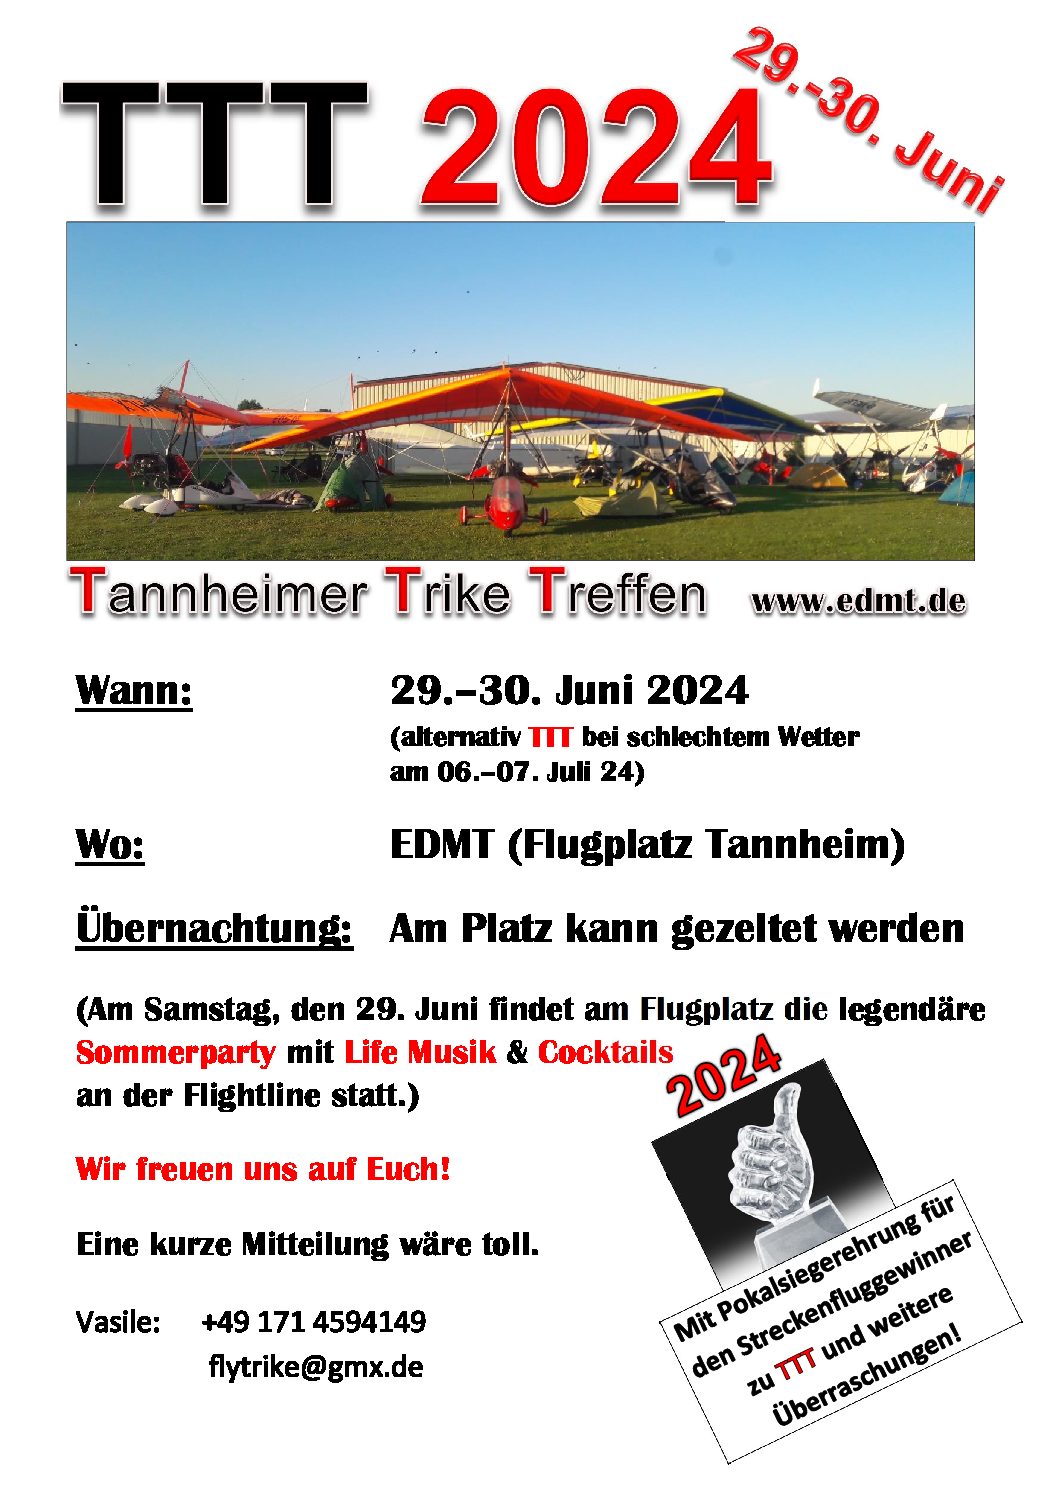 Tannheimer Trike Treffen (TTT) 2024